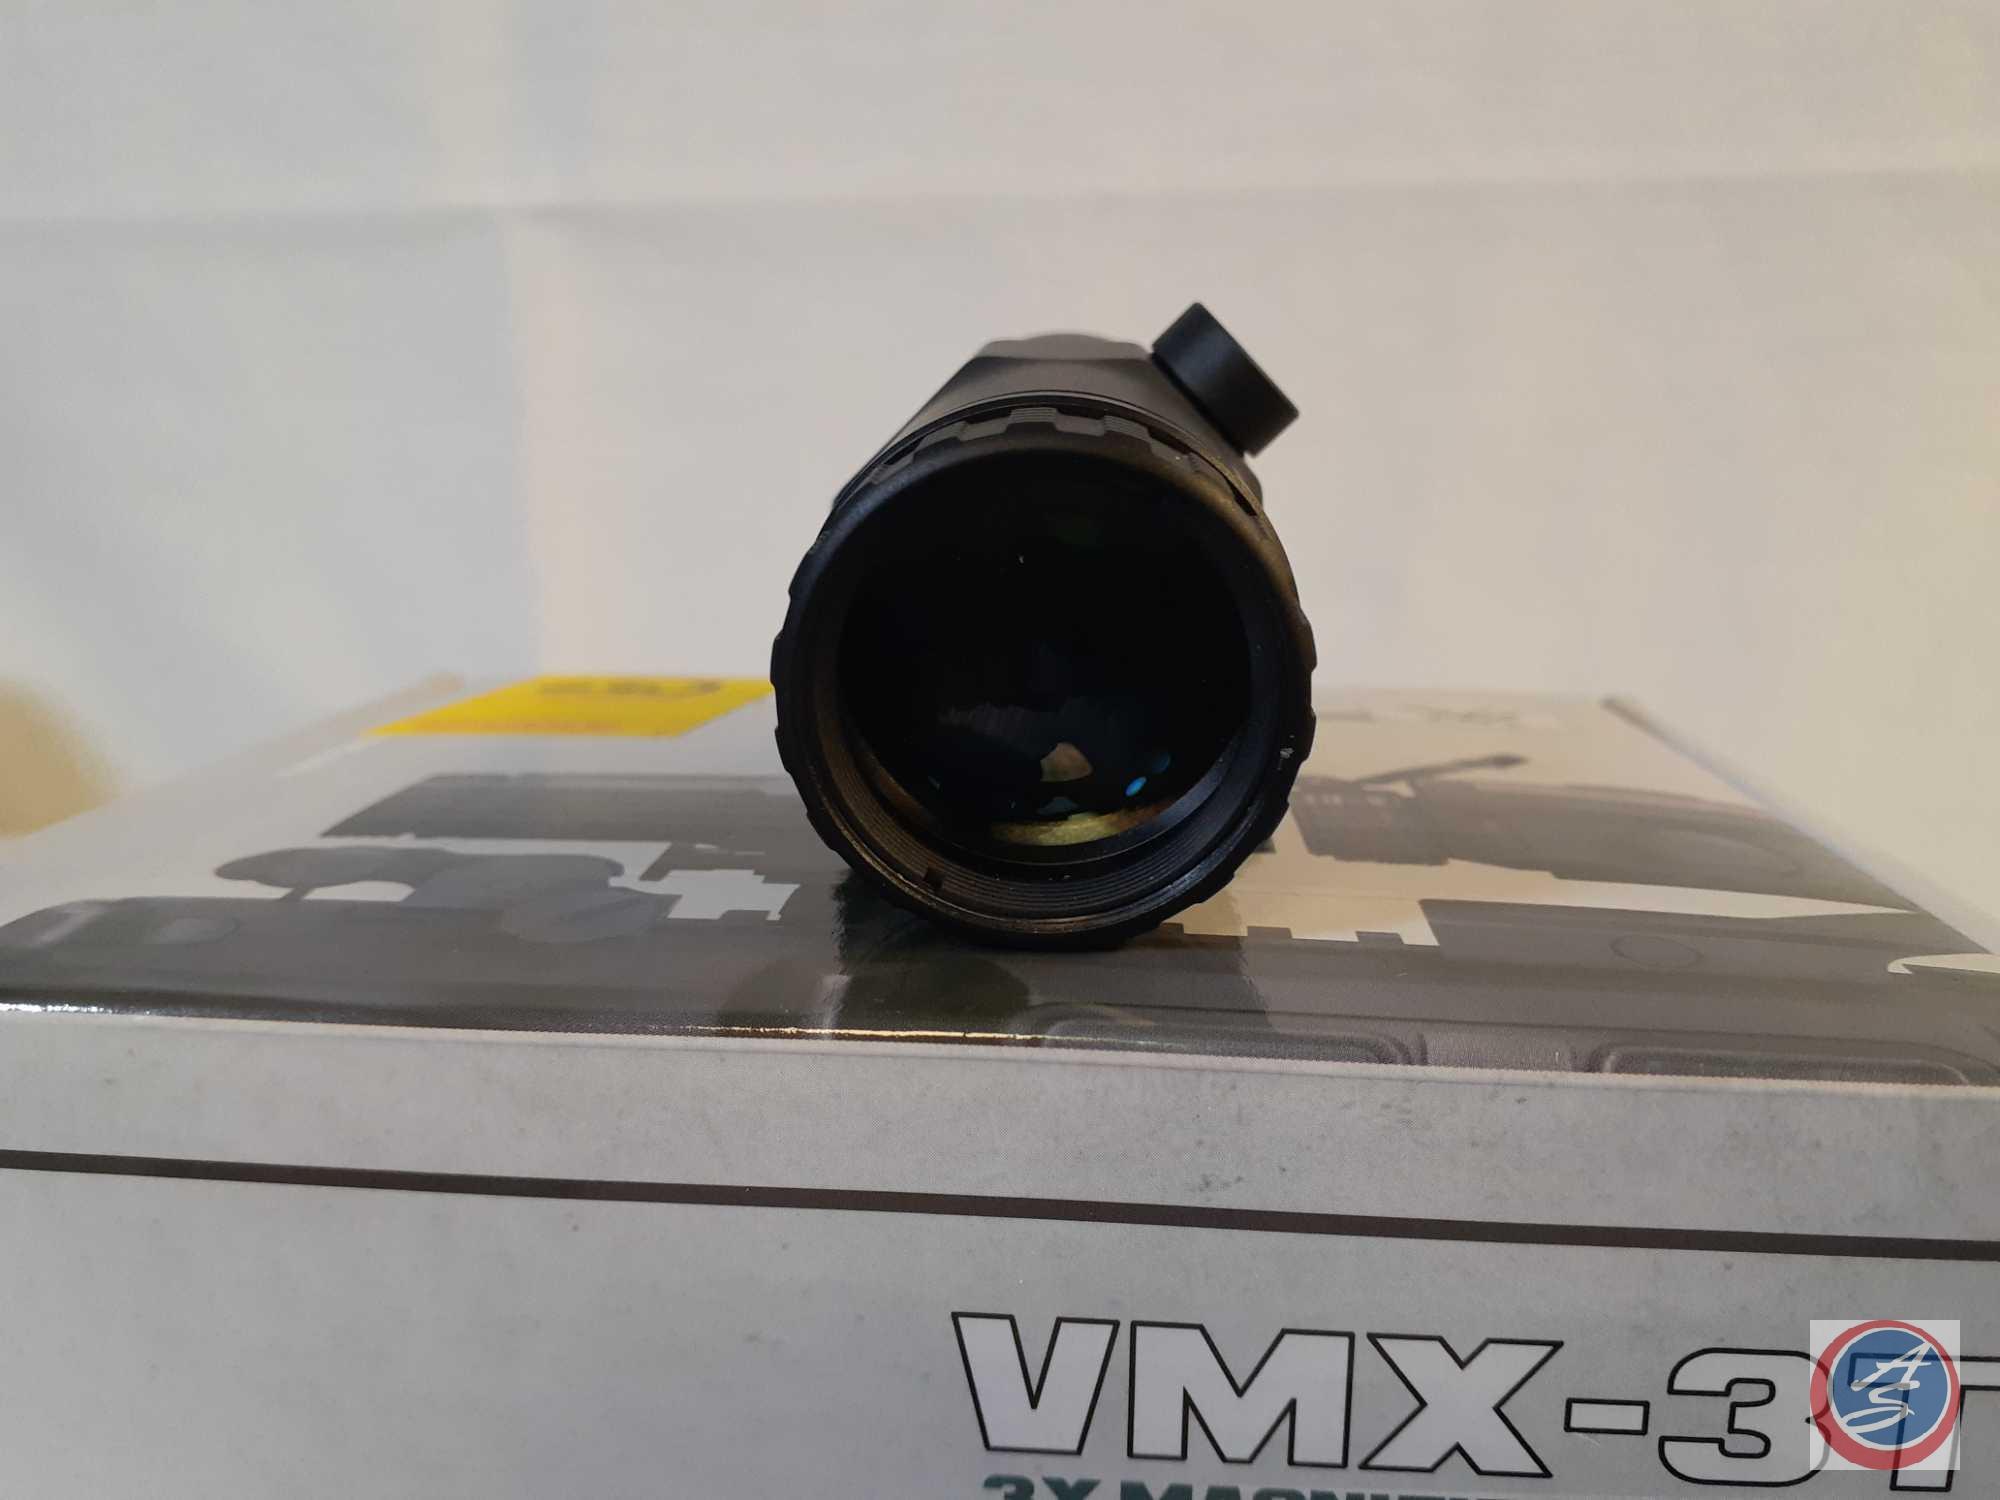 Vortex VMT-3 3X Magnifier, Flip Up Mount, Box